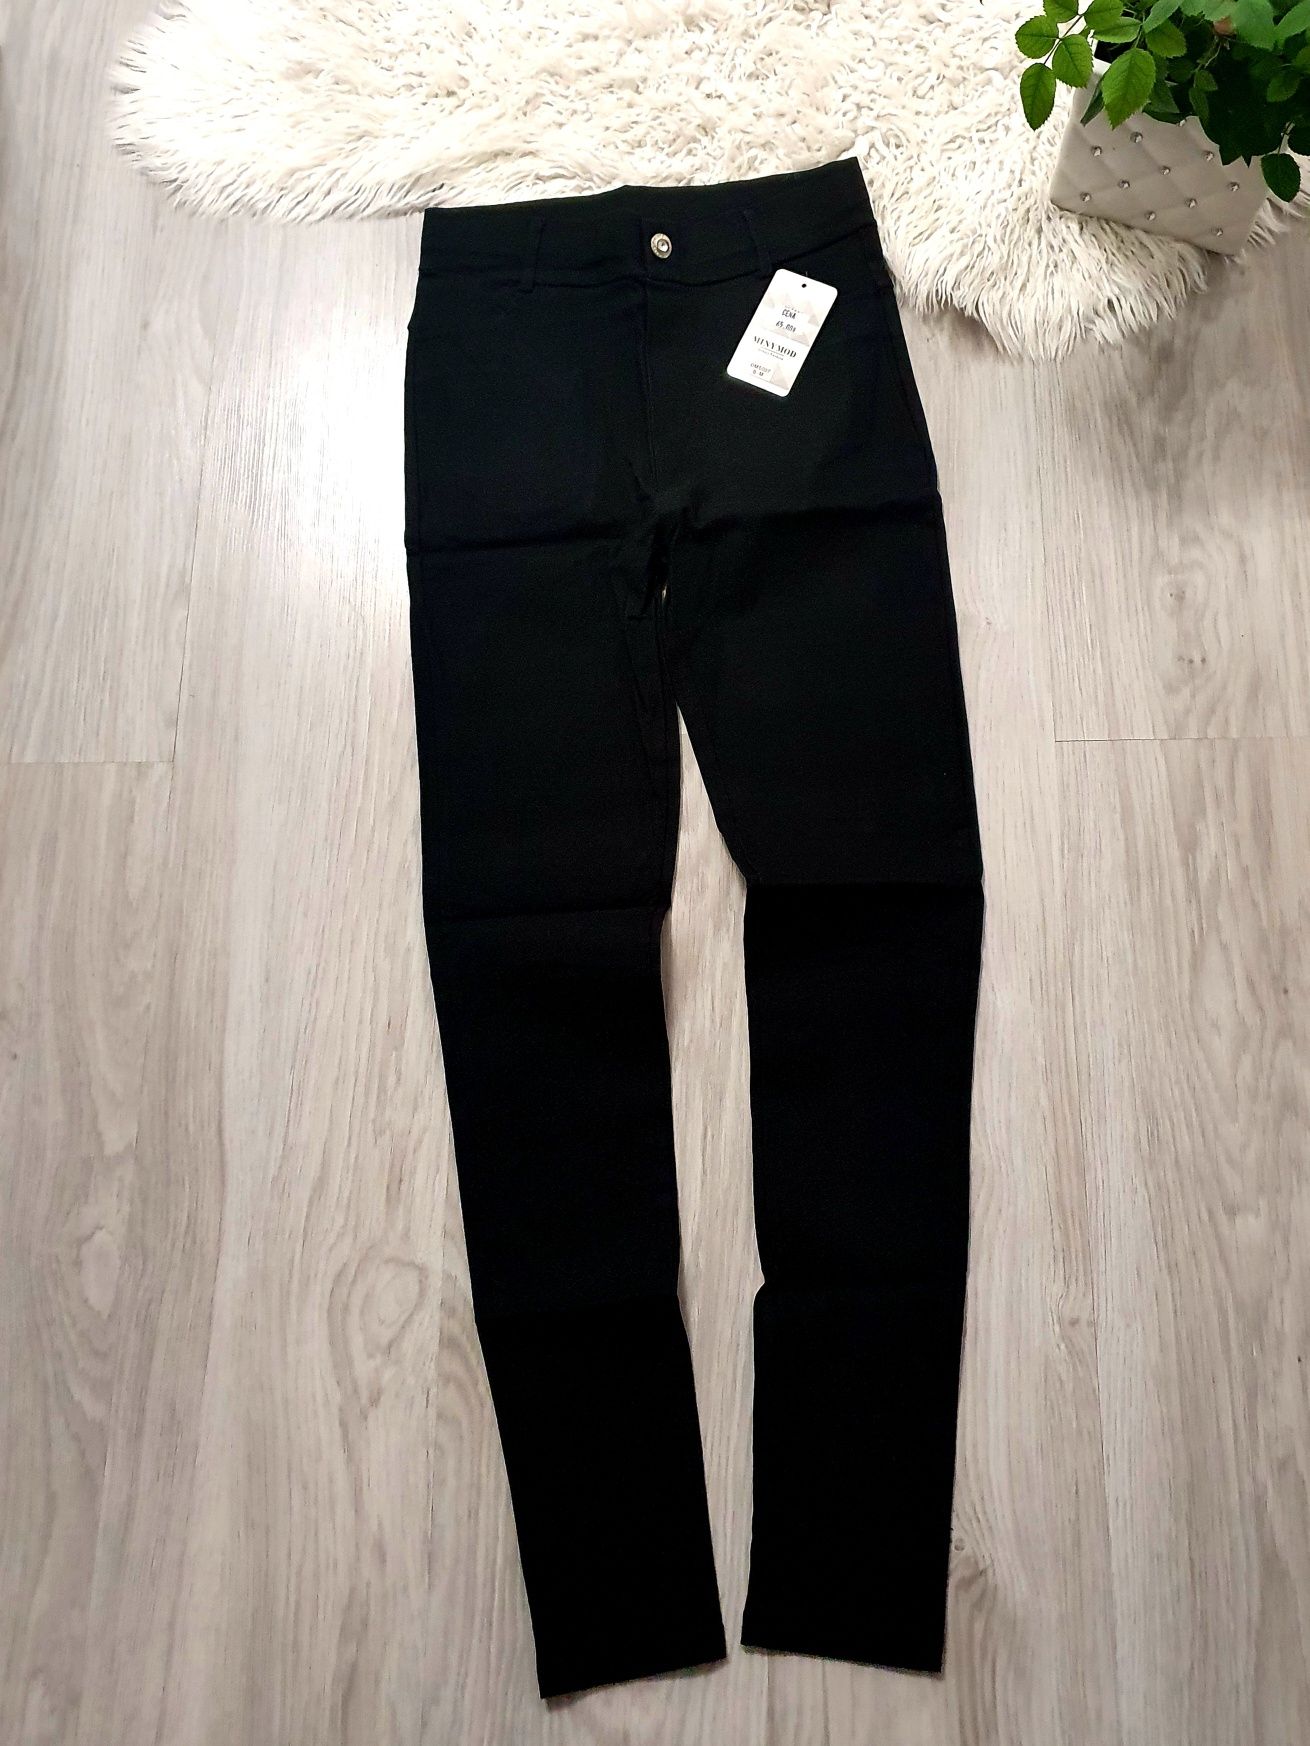 Spodnie legginsy czarne S/M .. OL0001